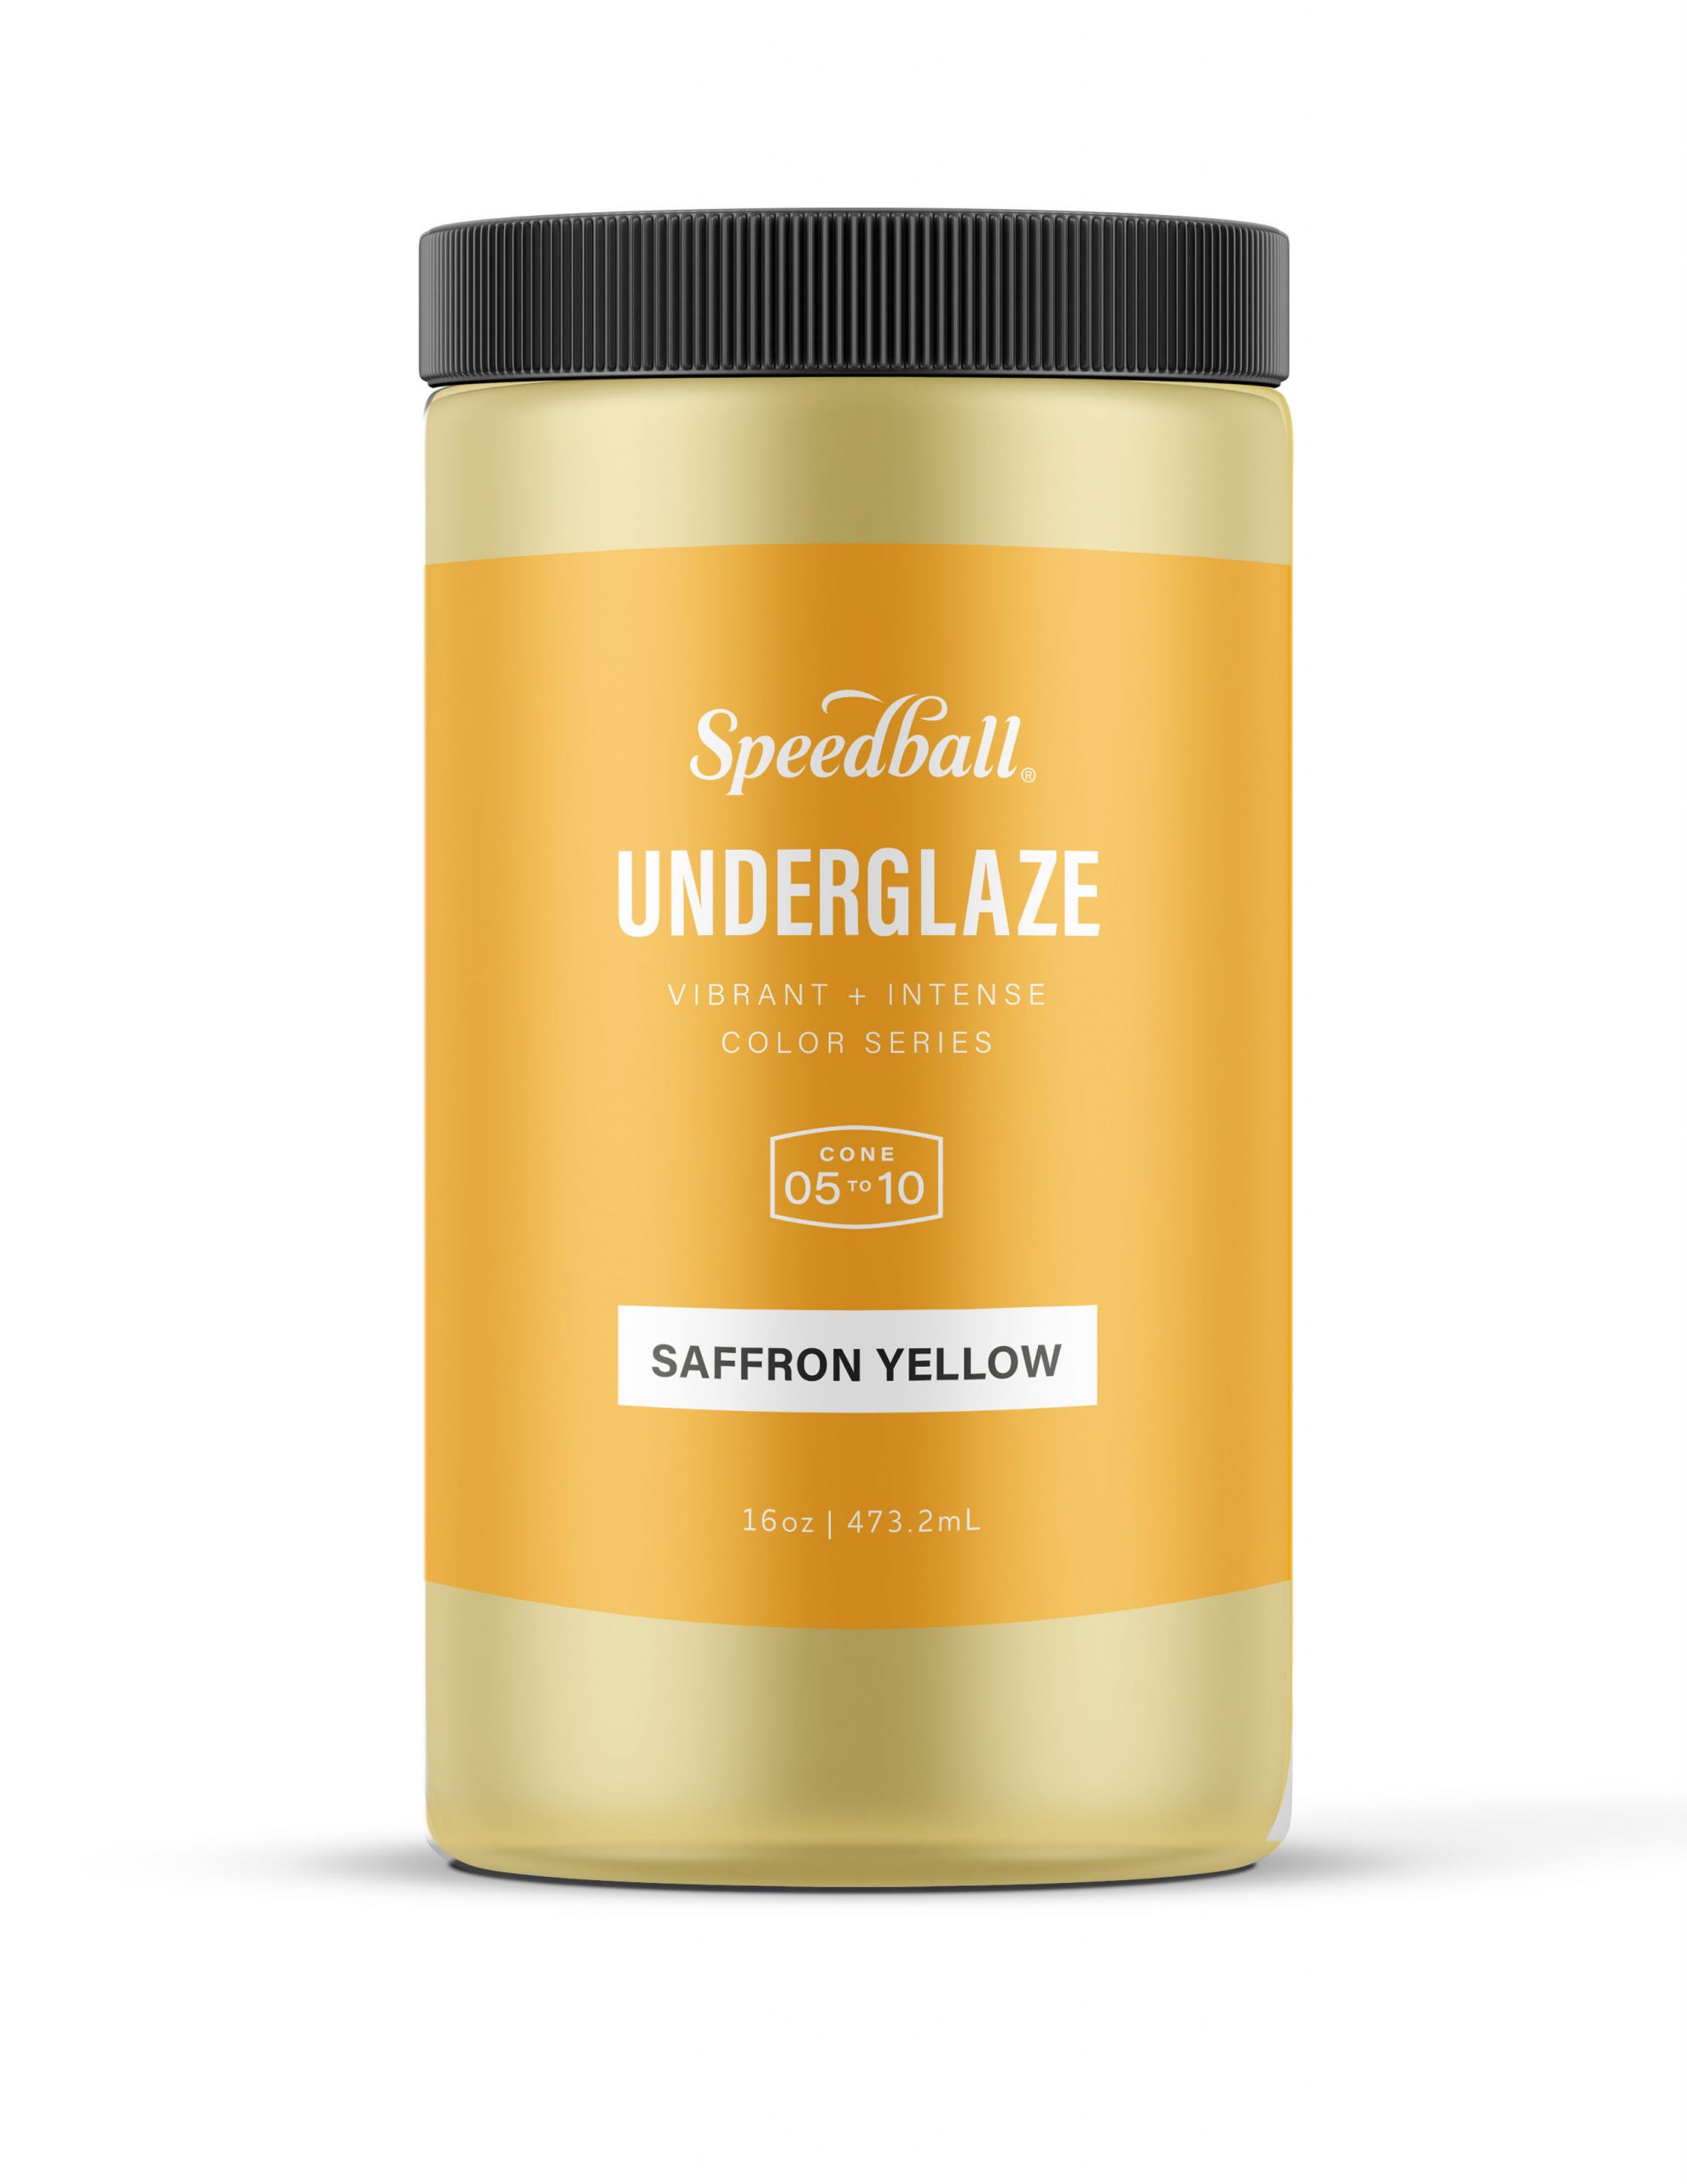 Speedball Underglaze 16oz Saffron Yellow